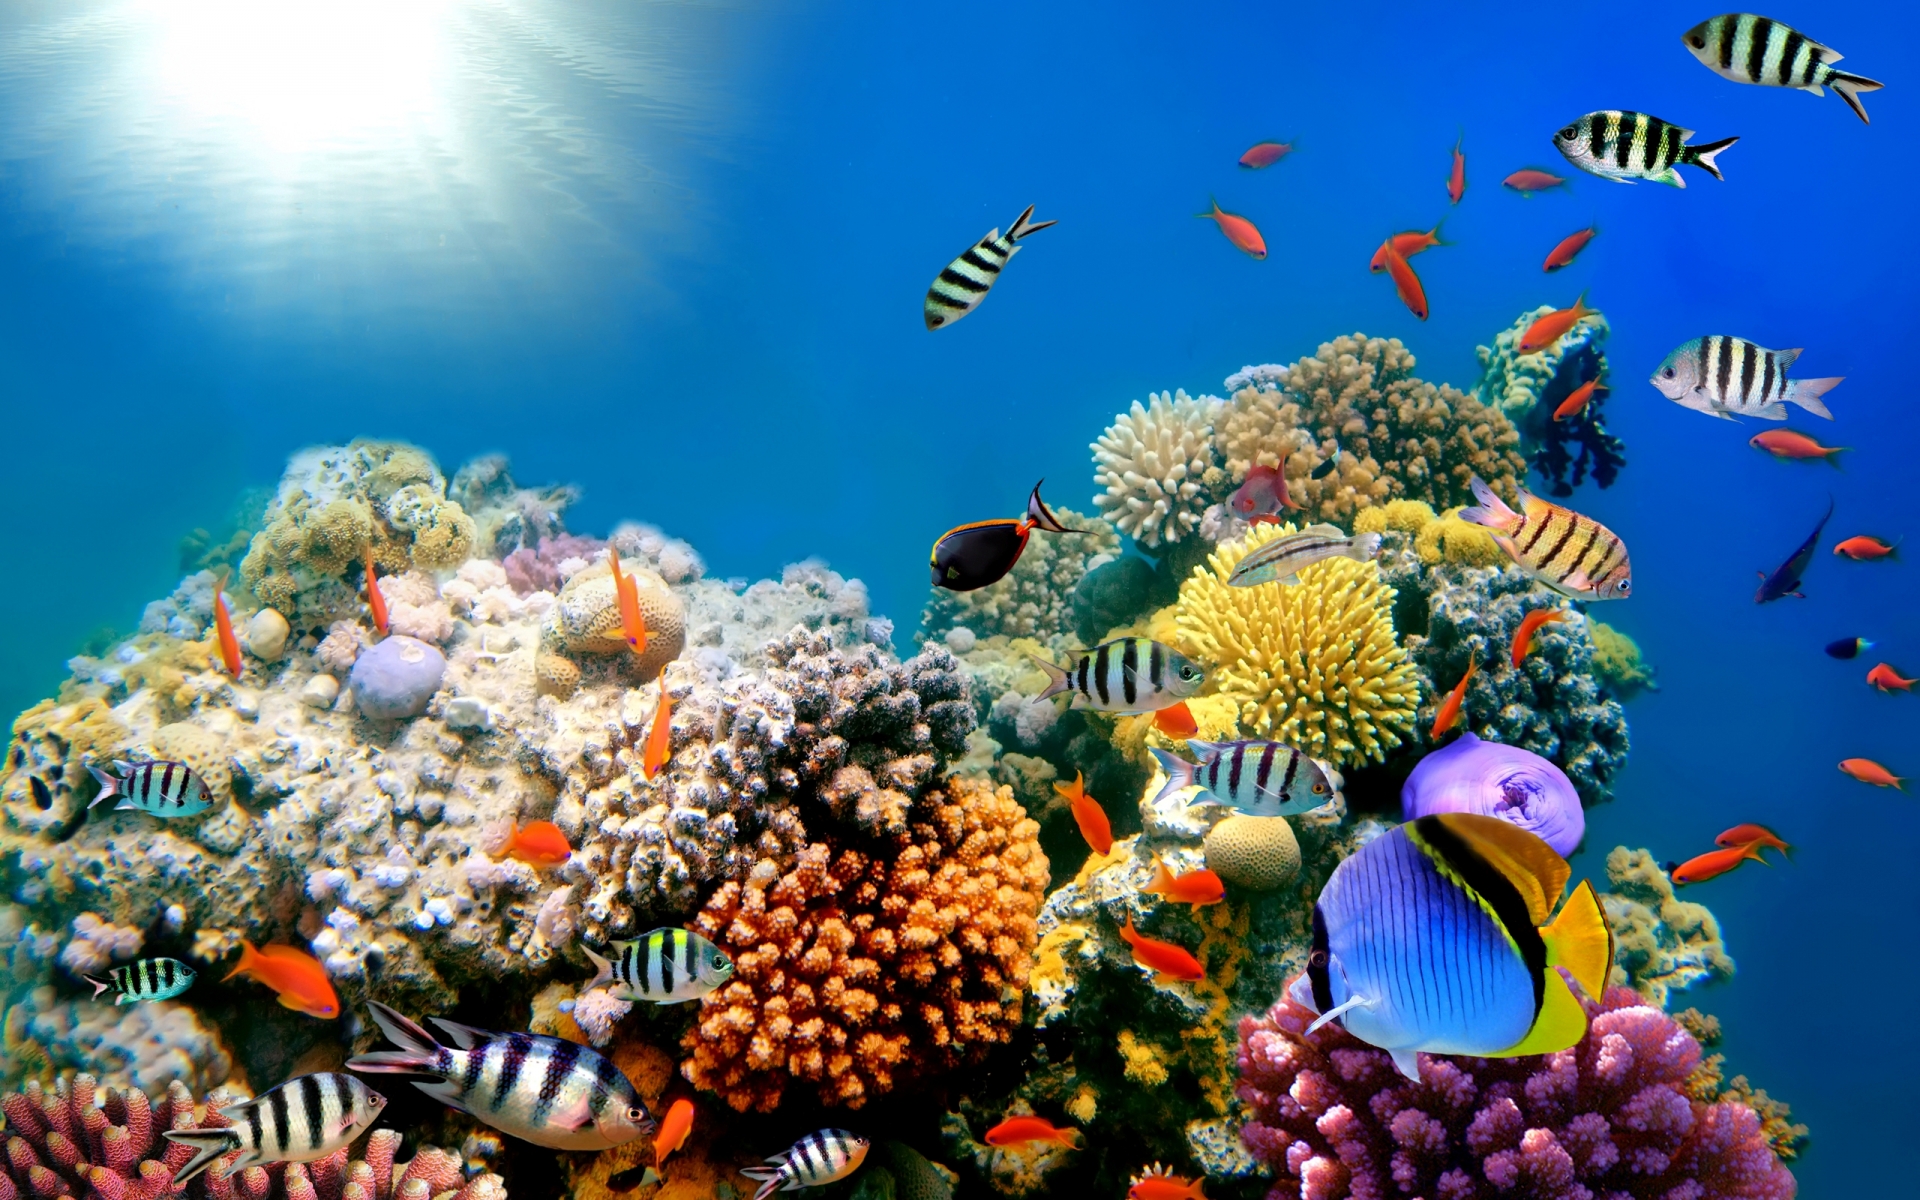 Hình nền đại dương cho máy tính sẽ mang đến cho bạn cảm giác như bạn đang lặn xuống đại dương sâu thẳm. Với những bức ảnh chất lượng cao và đầy màu sắc, bạn sẽ có được một không gian làm việc mới mẻ và đầy kích thích. Hãy cùng tải ngay để đắm mình trong thế giới dưới đáy biển.